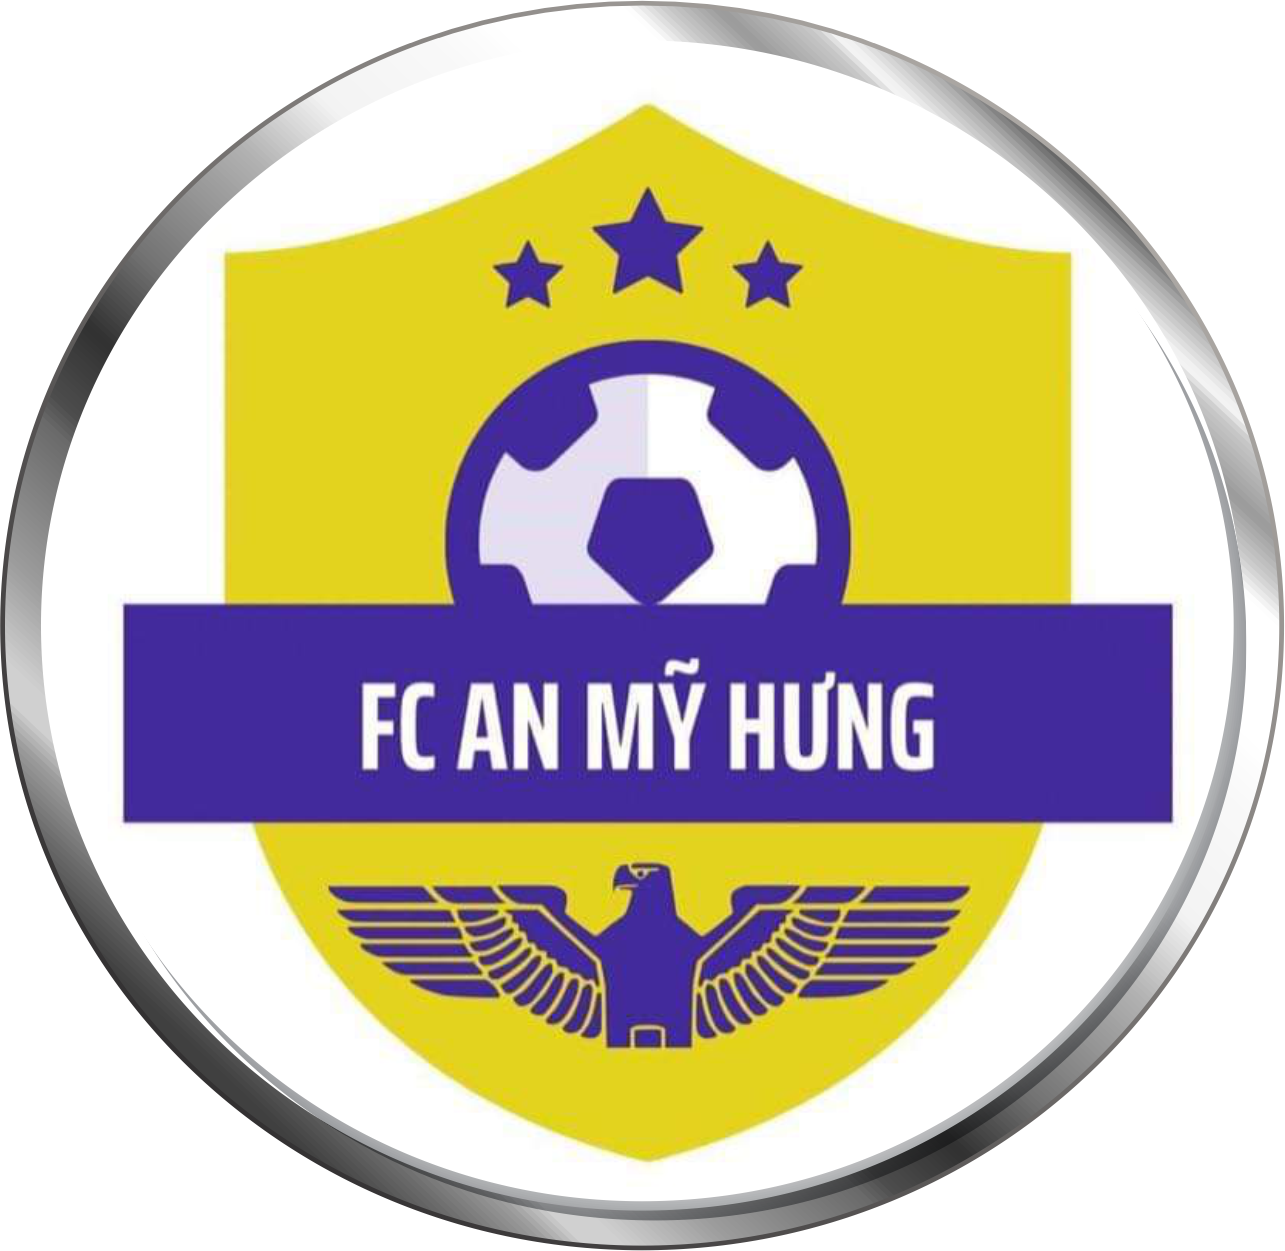 FC AN MỸ HƯNG